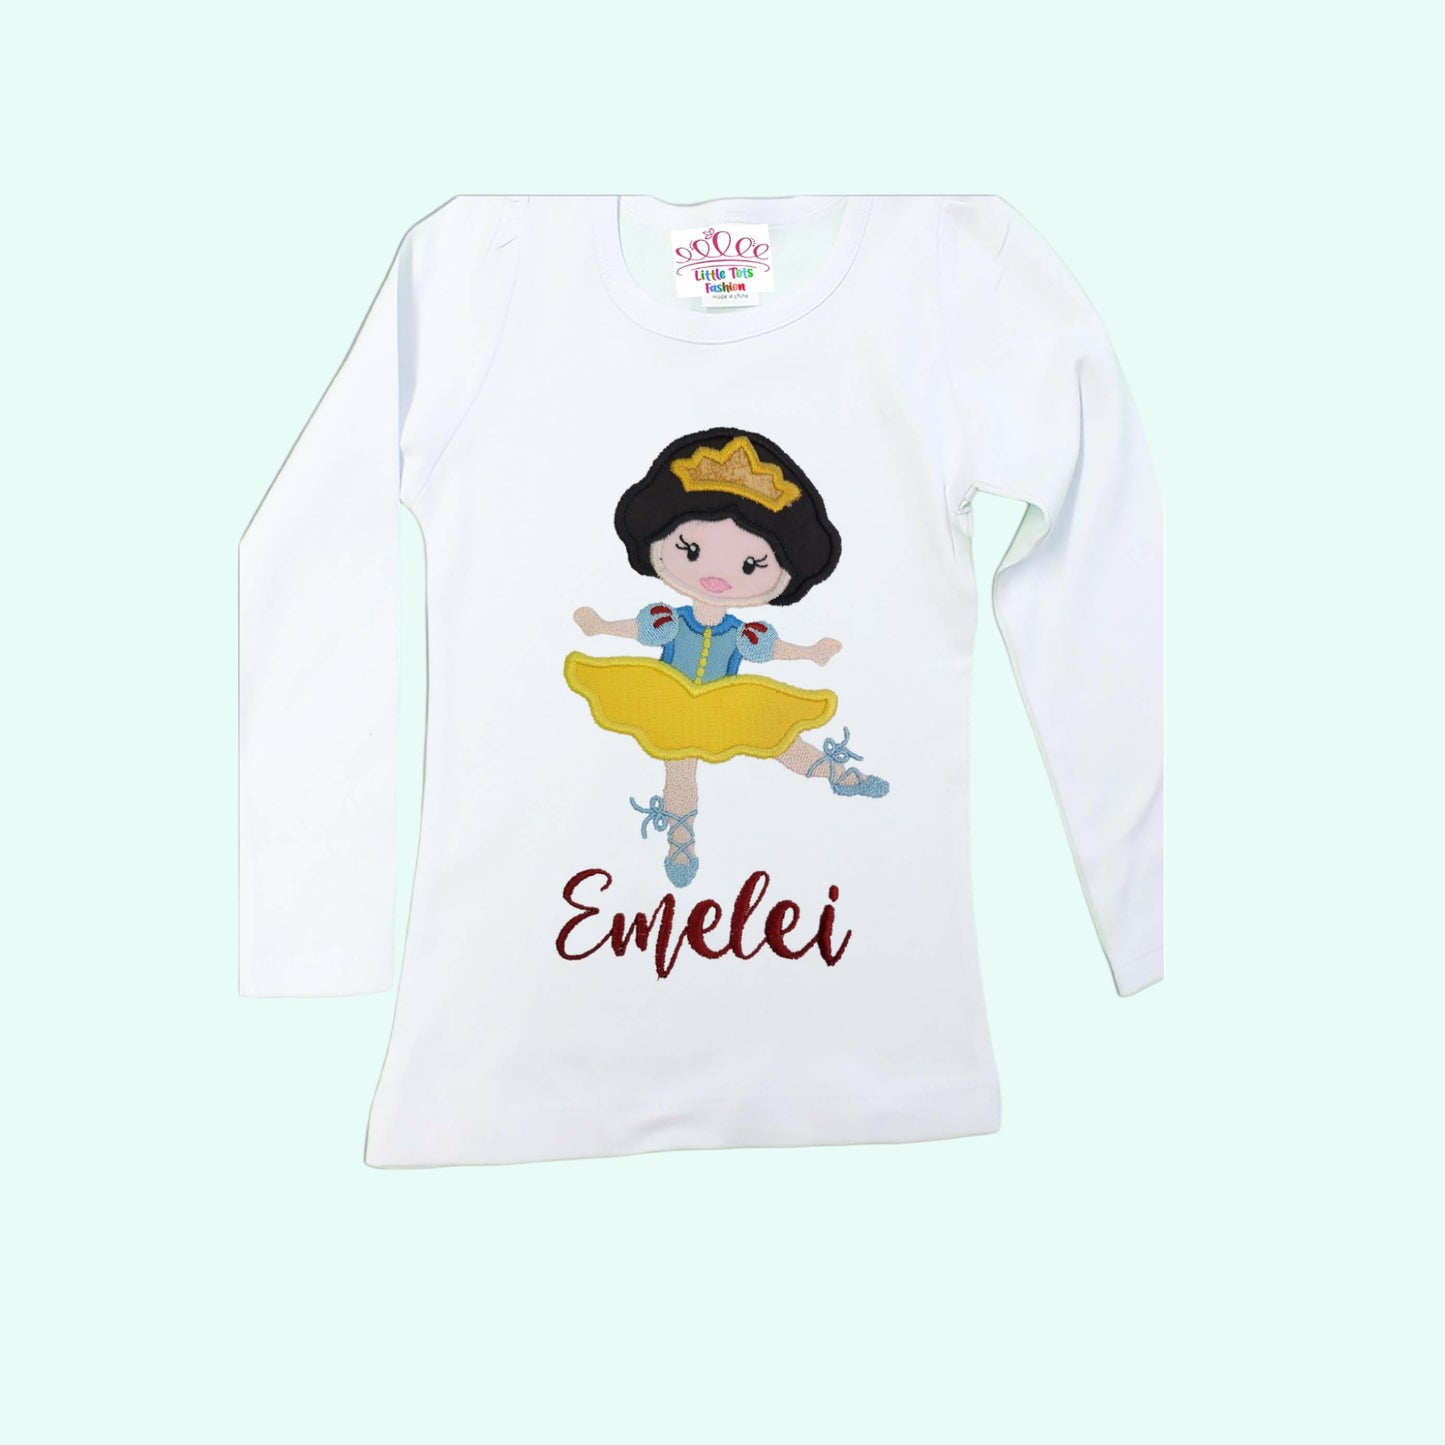 Ballerina Birthday Shirt, Personalized shirt, Girls Ballerina Shirt, Snow White inspire girls shirt